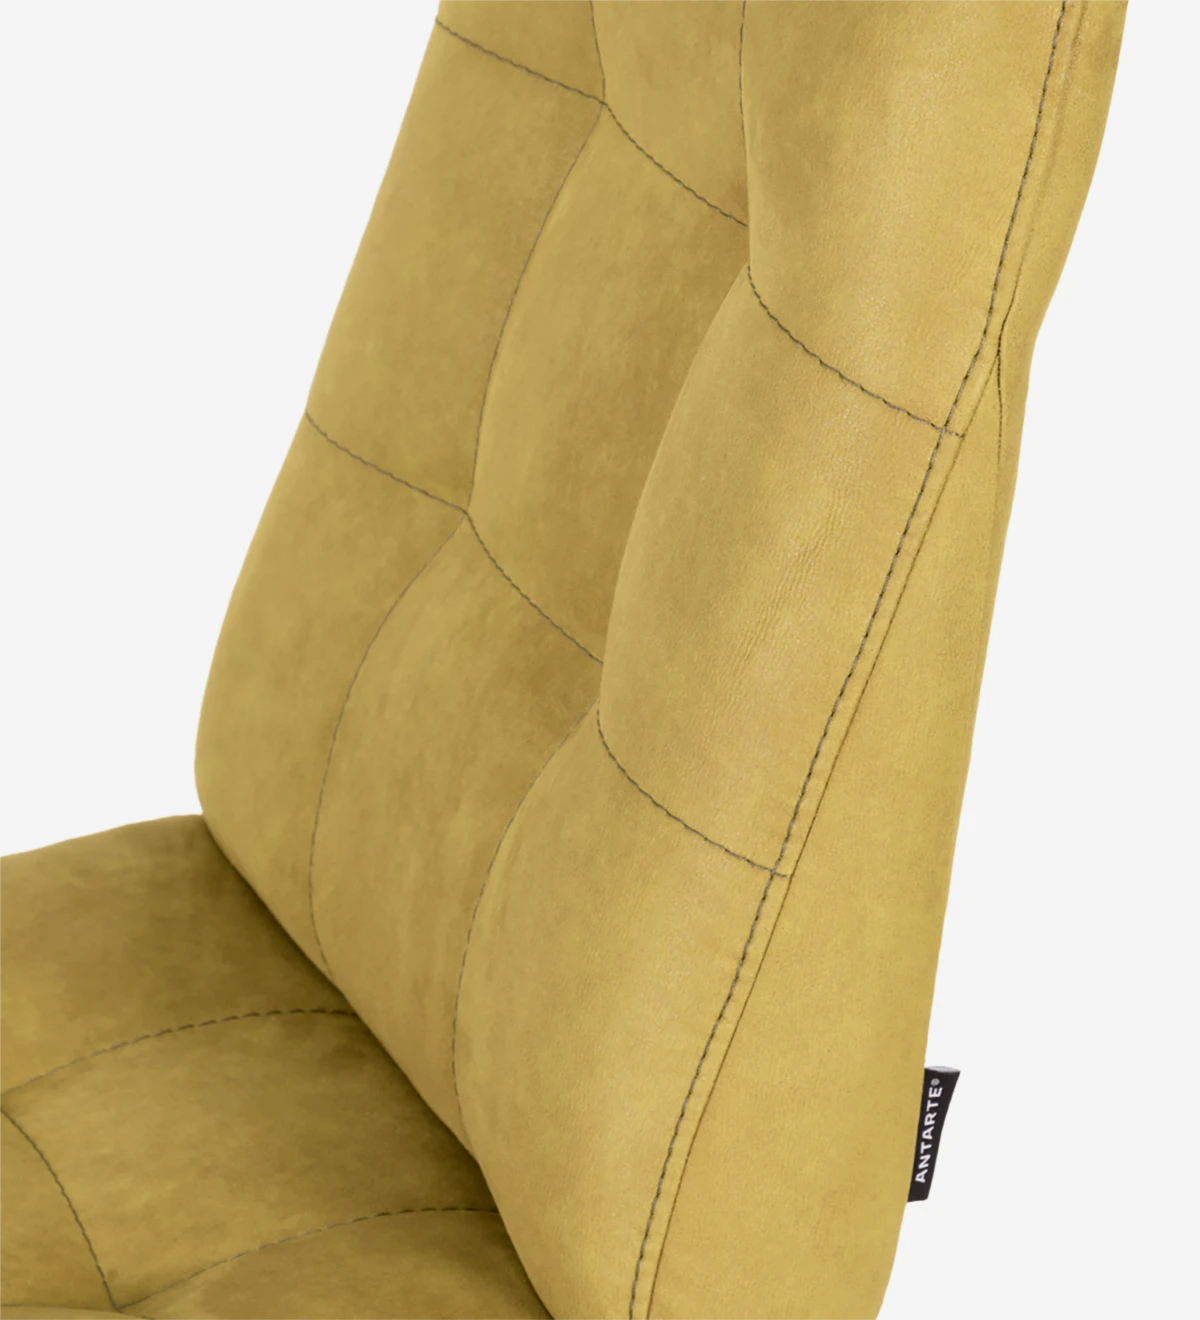 Cadeira estofada a tecido, com pés metálicos lacados a dourado. 